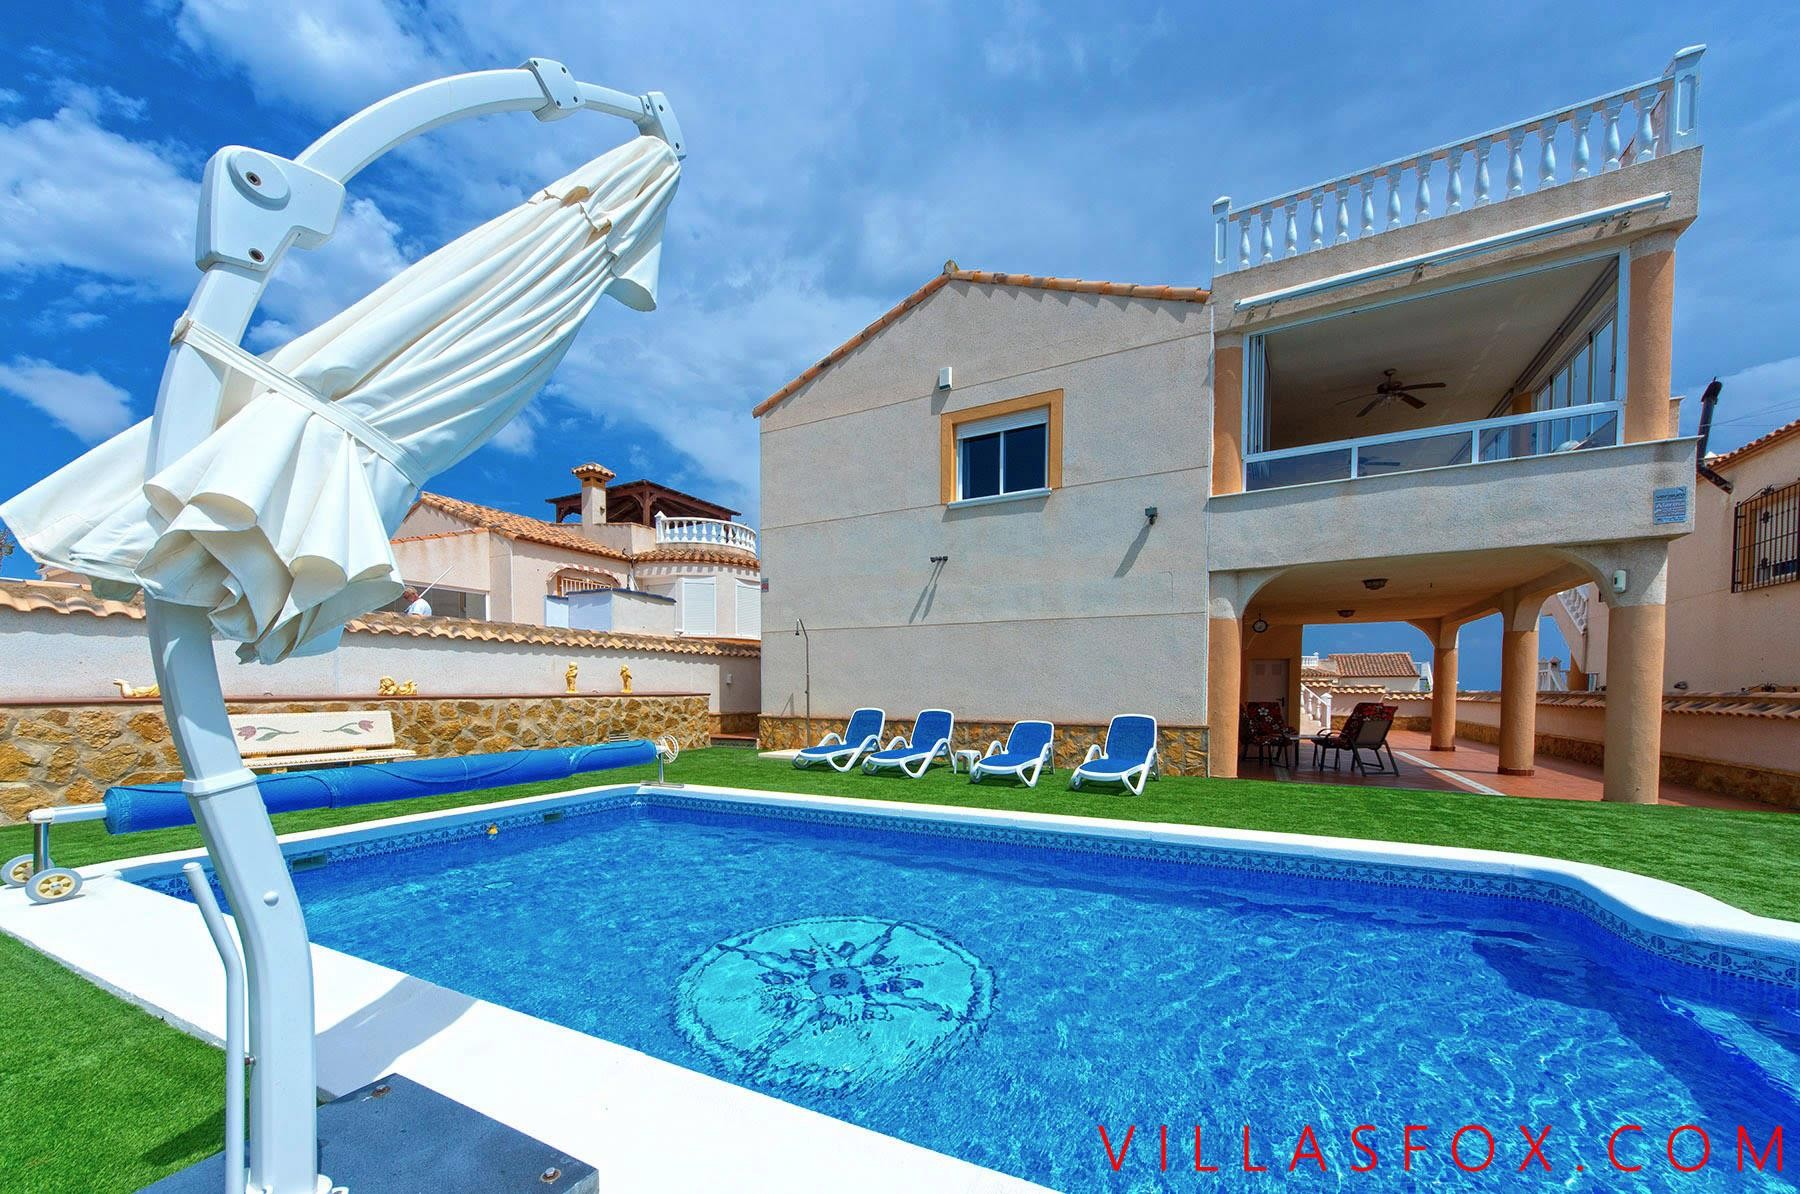 Lakeview Mansions 4-roms villa med fantastisk utsikt, privat basseng, garasje